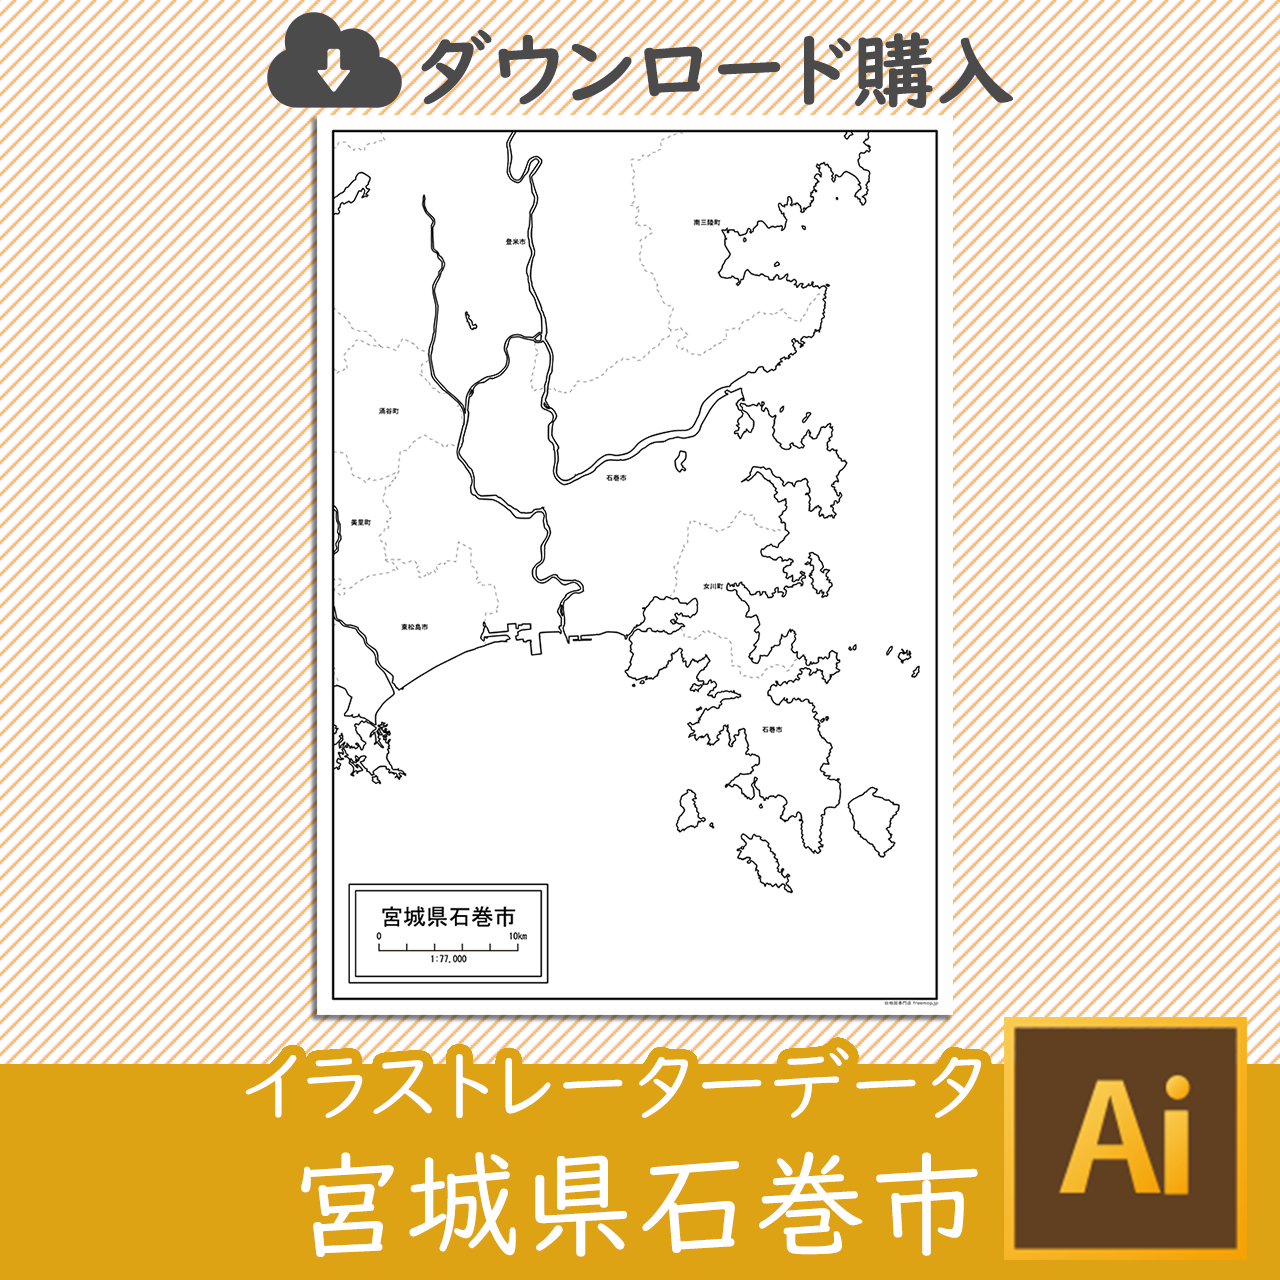 石巻市のaiデータのサムネイル画像